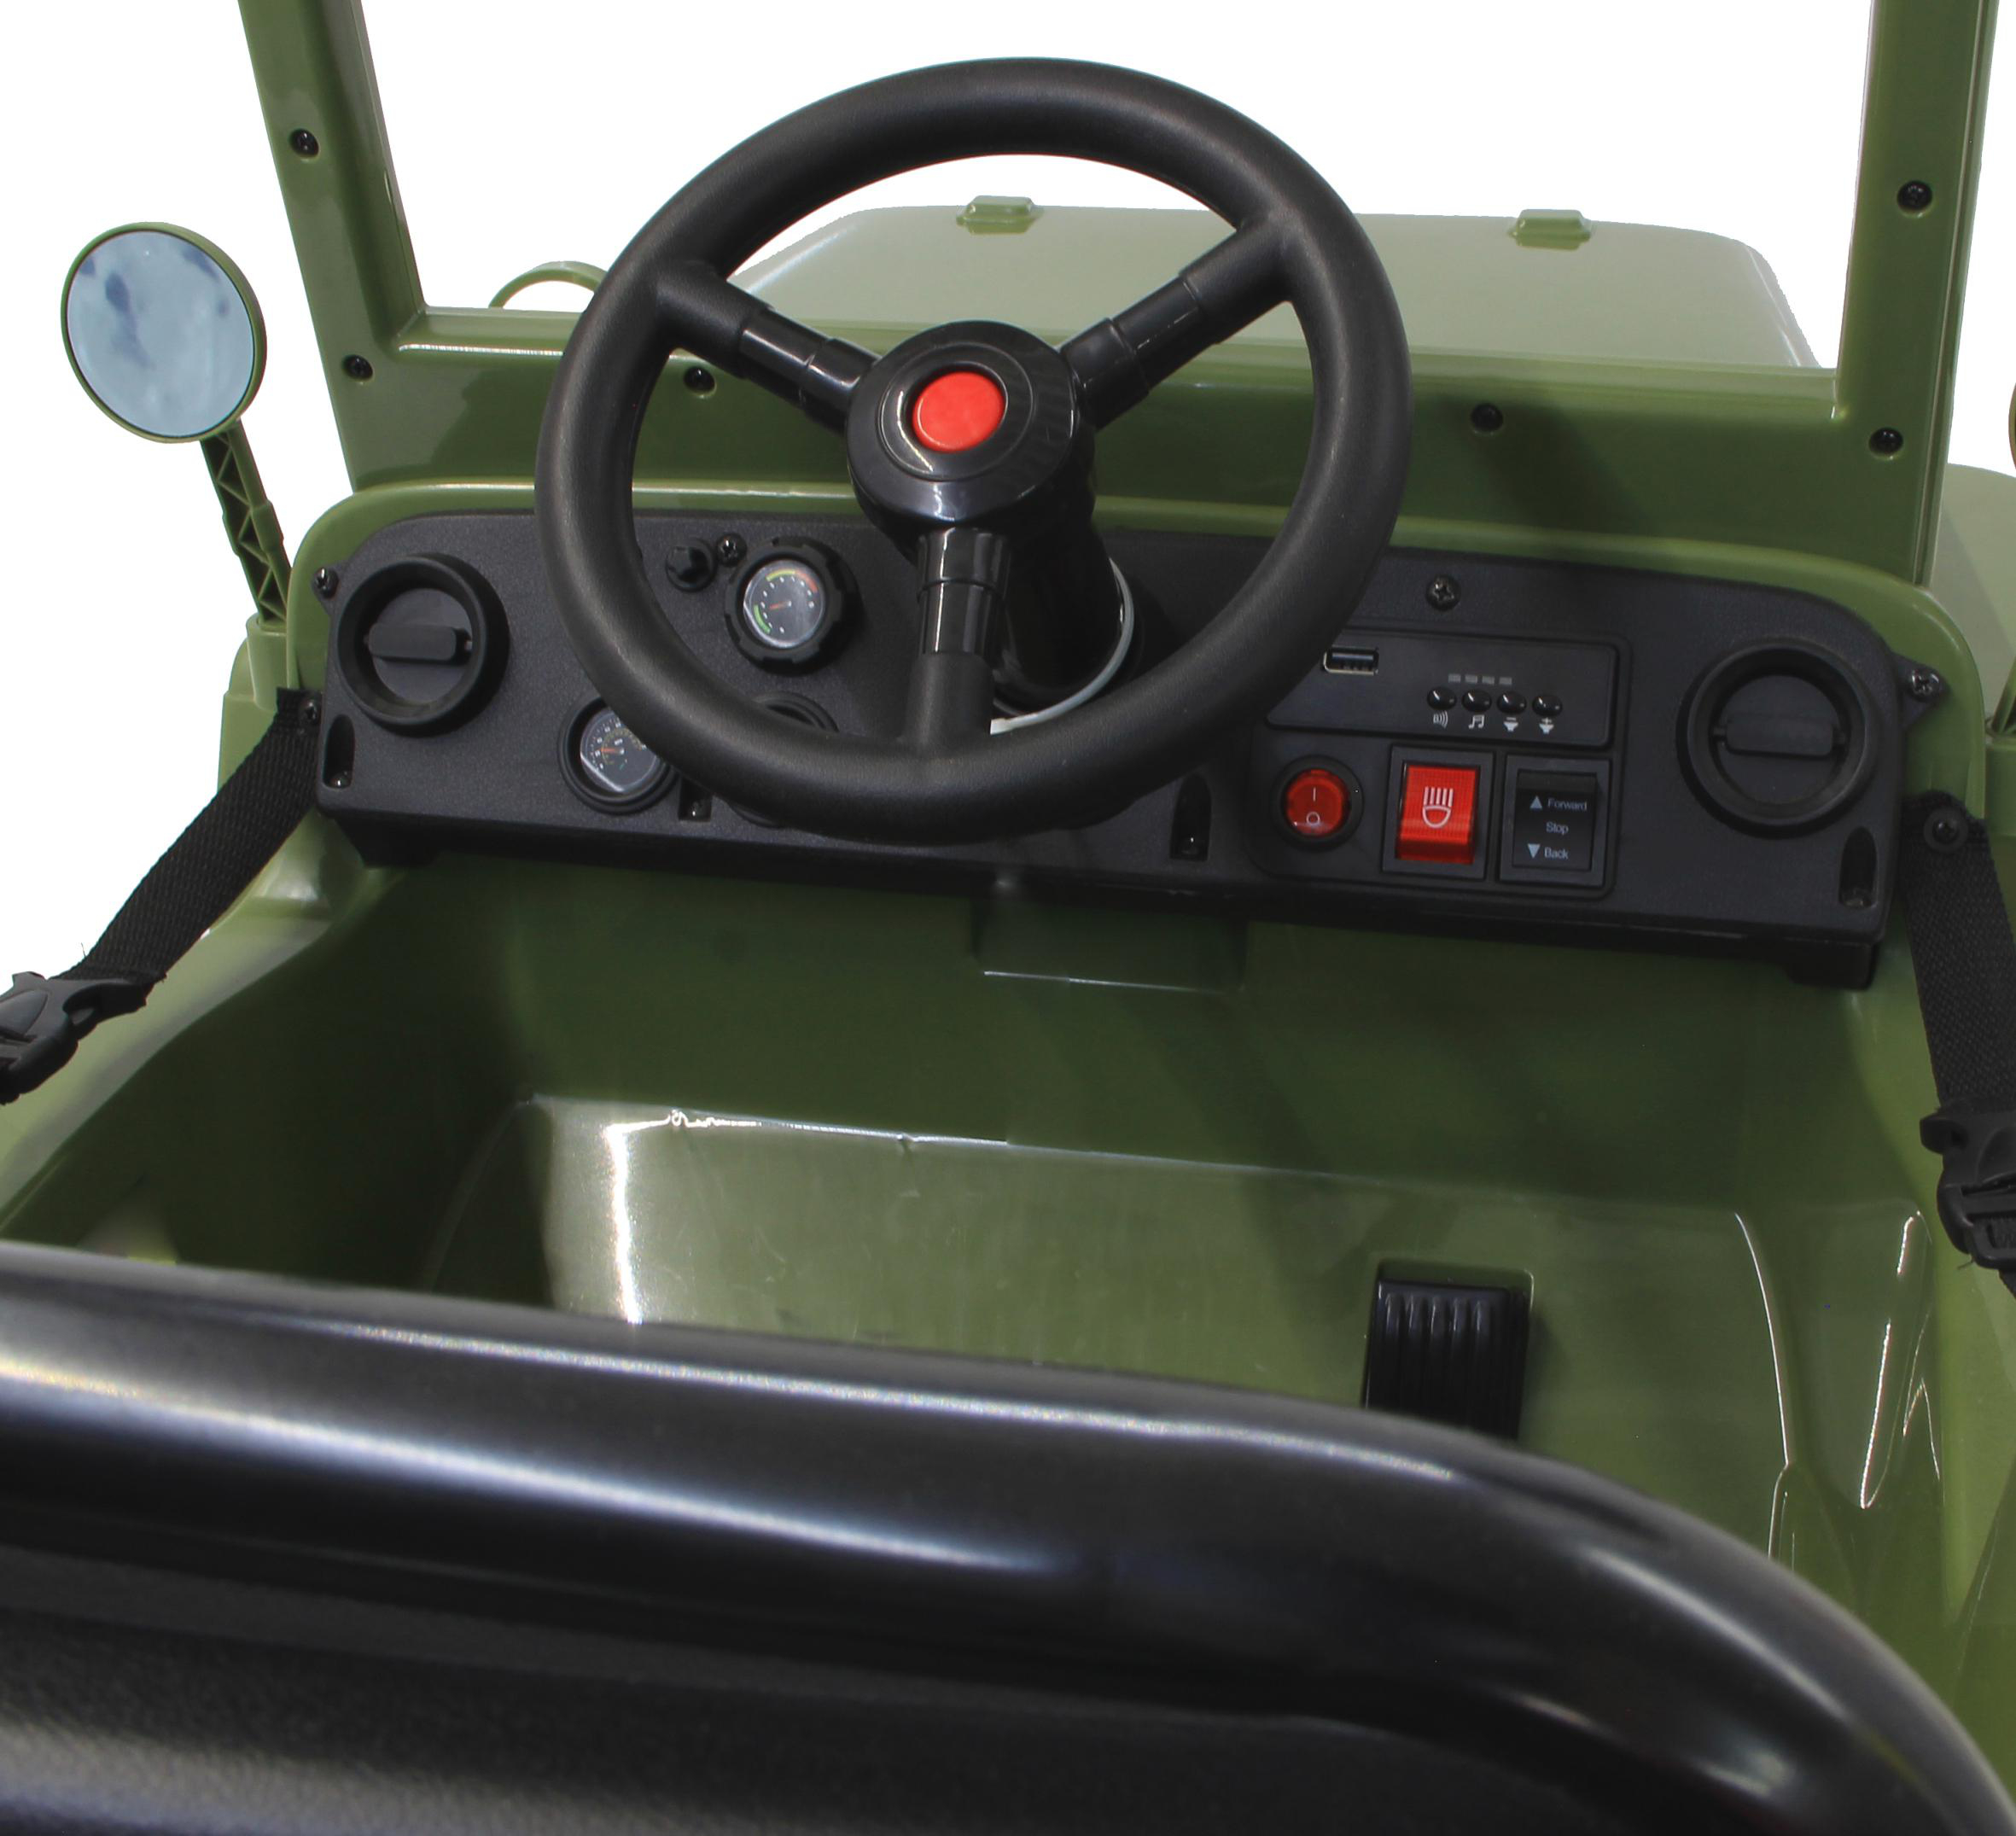 JAMARA KIDS Ride-on Jeep Elektrofahrzeug Willys 12V MB Army Grün